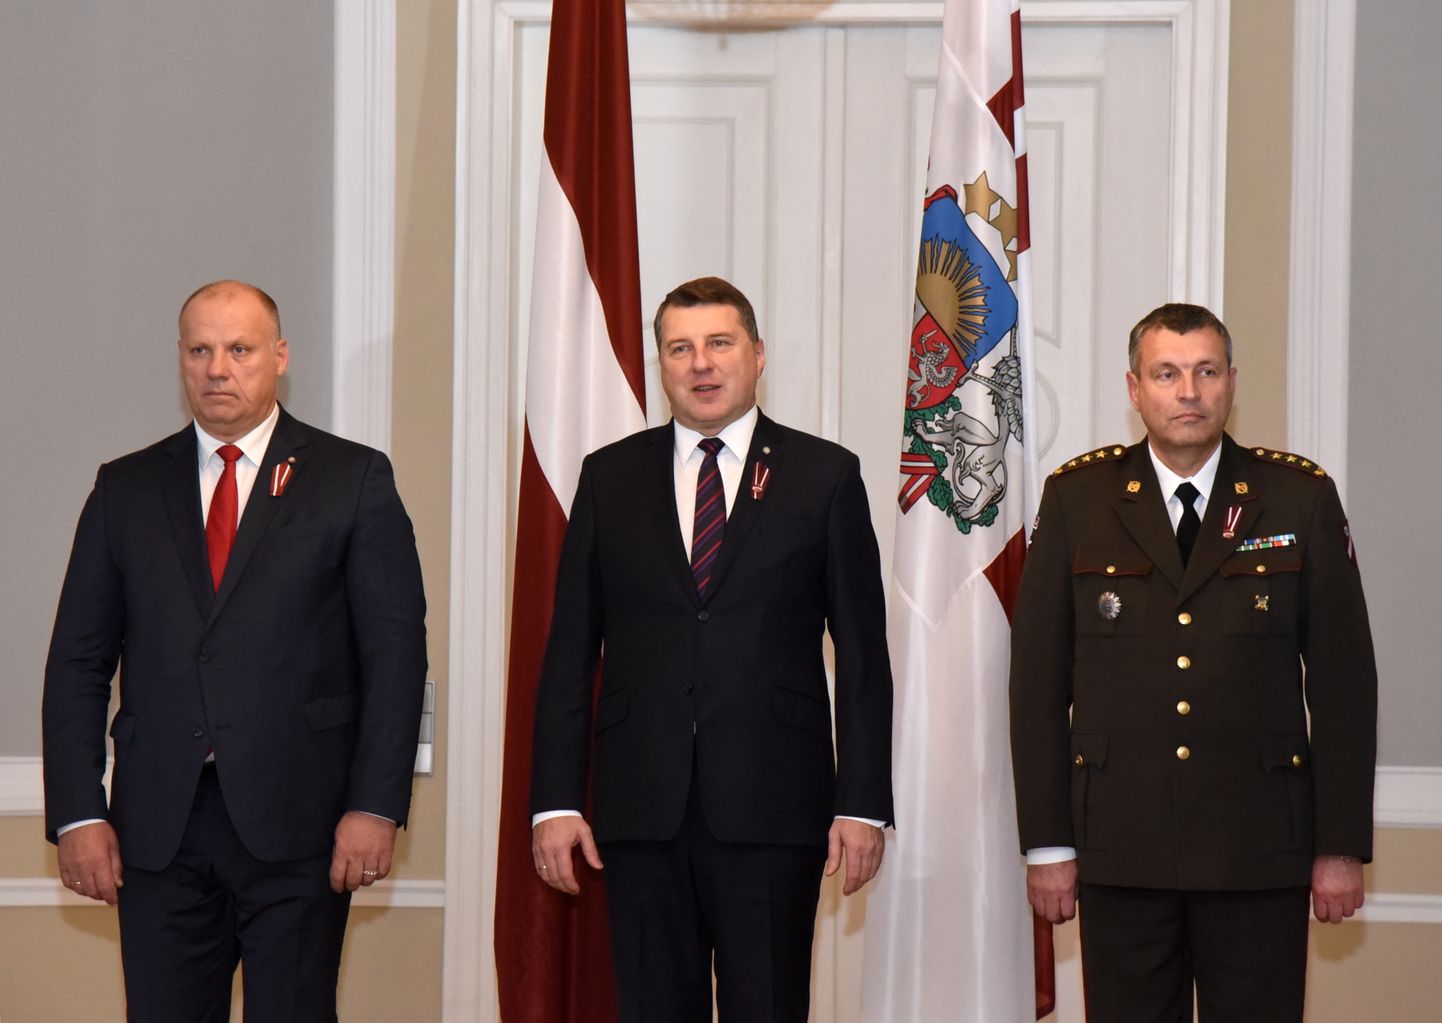 Aizsardzības ministrs Raimonds Bergmanis (no kreisās), Valsts prezidents Raimonds Vējonis un Nacionālo bruņoto spēku komandieris ģenerālleitnants Leonīds Kalniņš piedalās dienesta pakāpju un zobenu pasniegšanas ceremonijā Nacionālo bruņoto spēku augstākajiem virsniekiem šā gada 7. novembrī